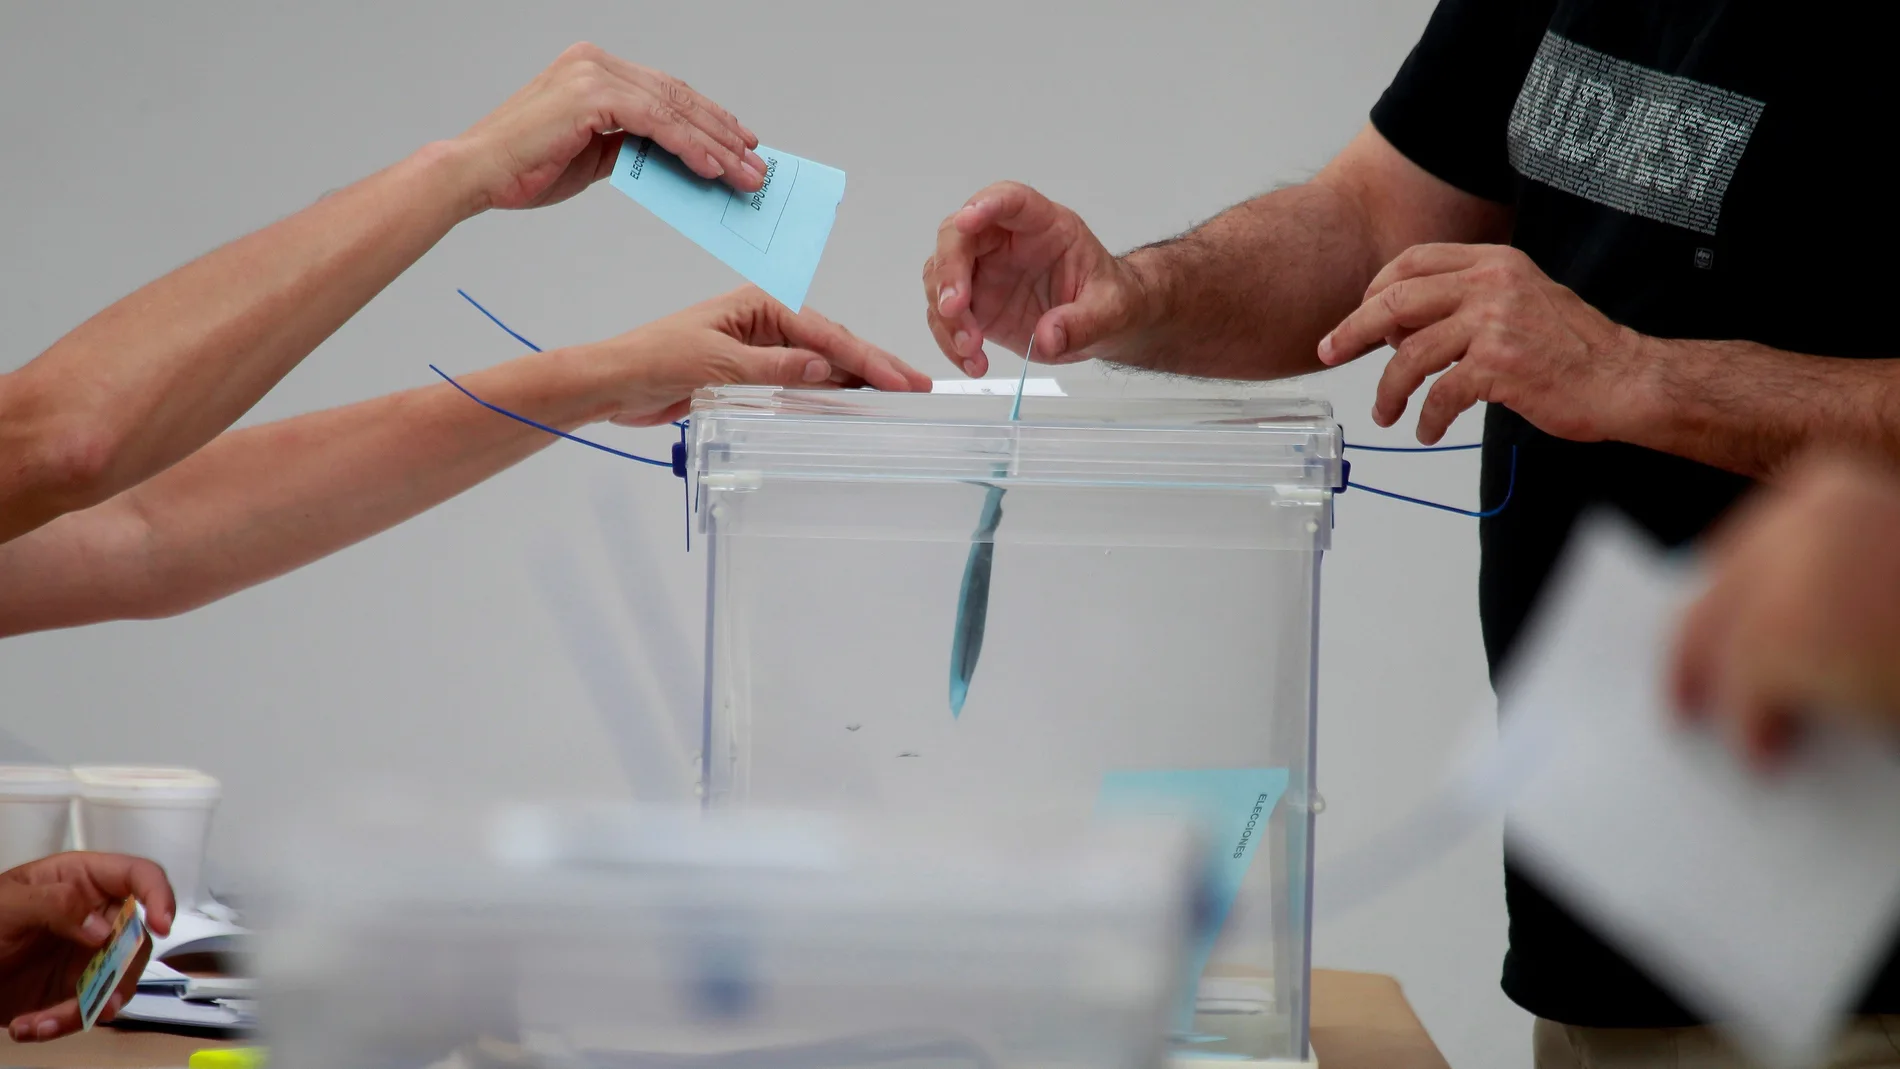 Elecciones generales 2019: ¿Dónde votan los interventores y apoderados?